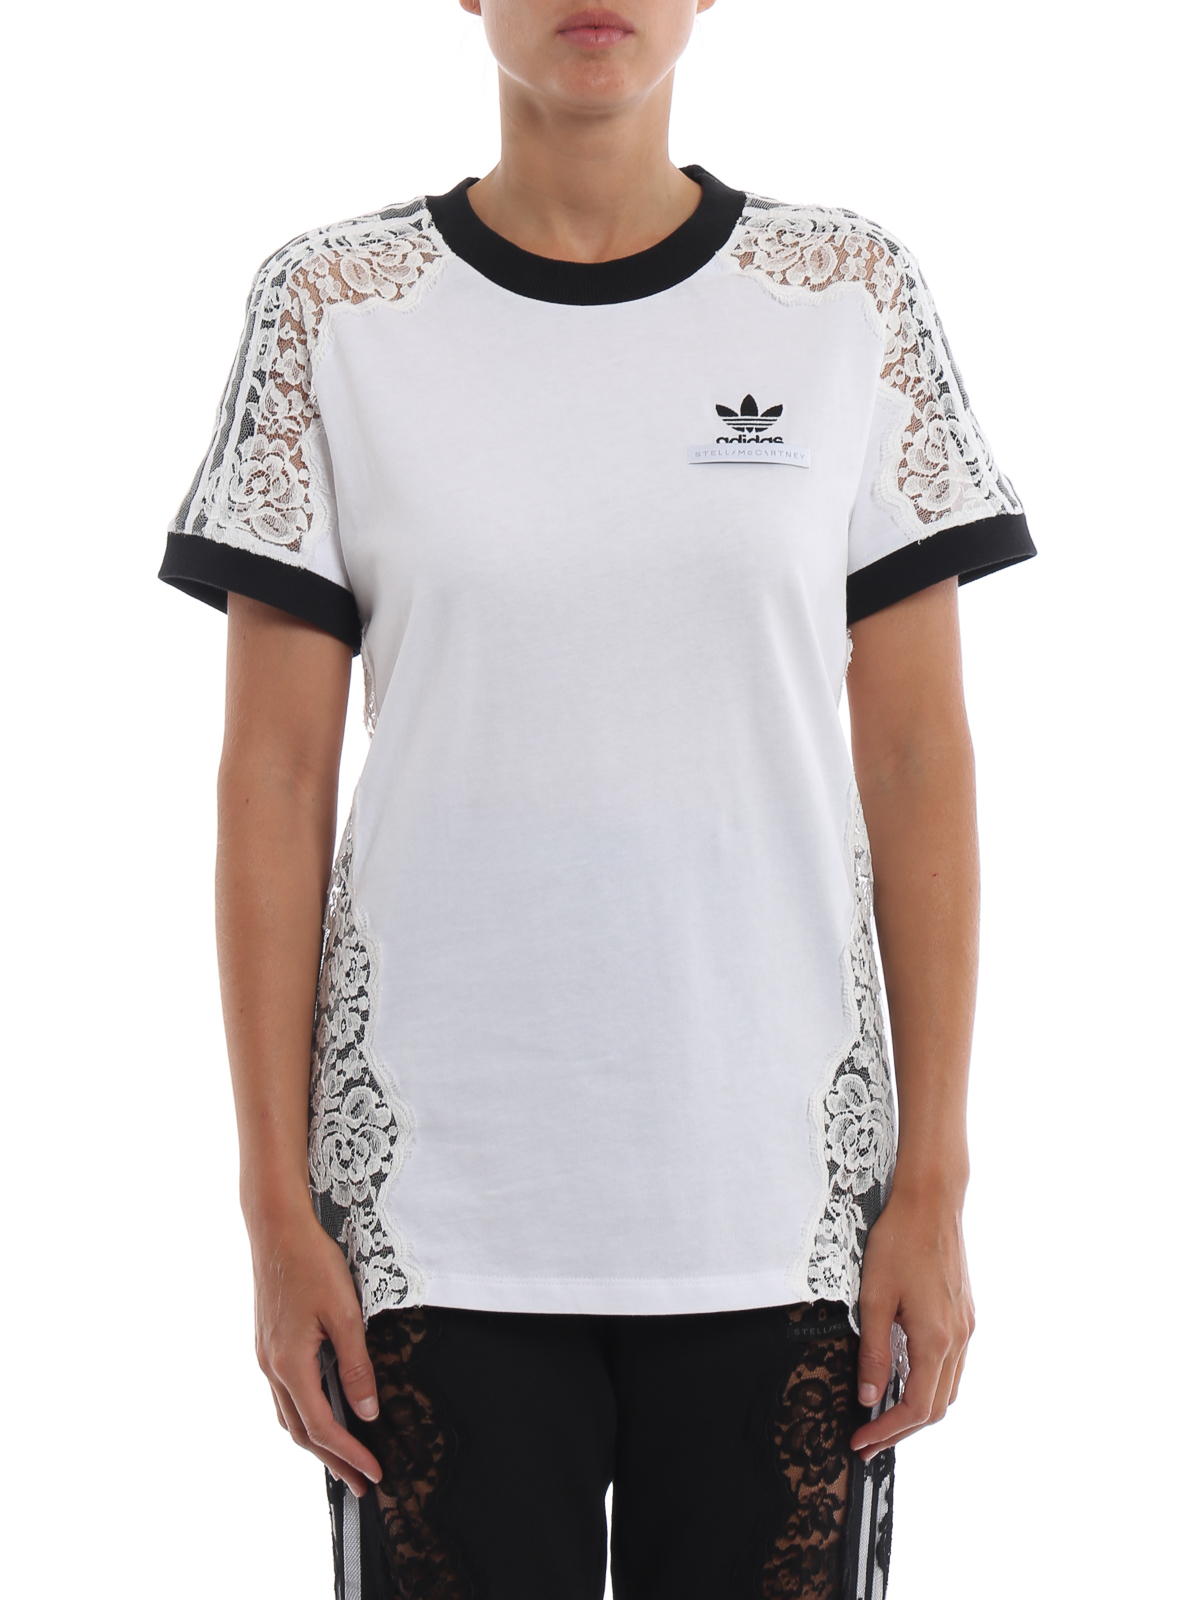 Tシャツ Adidas by Stella McCartney - Tシャツ - 白 - 536050SLW409000